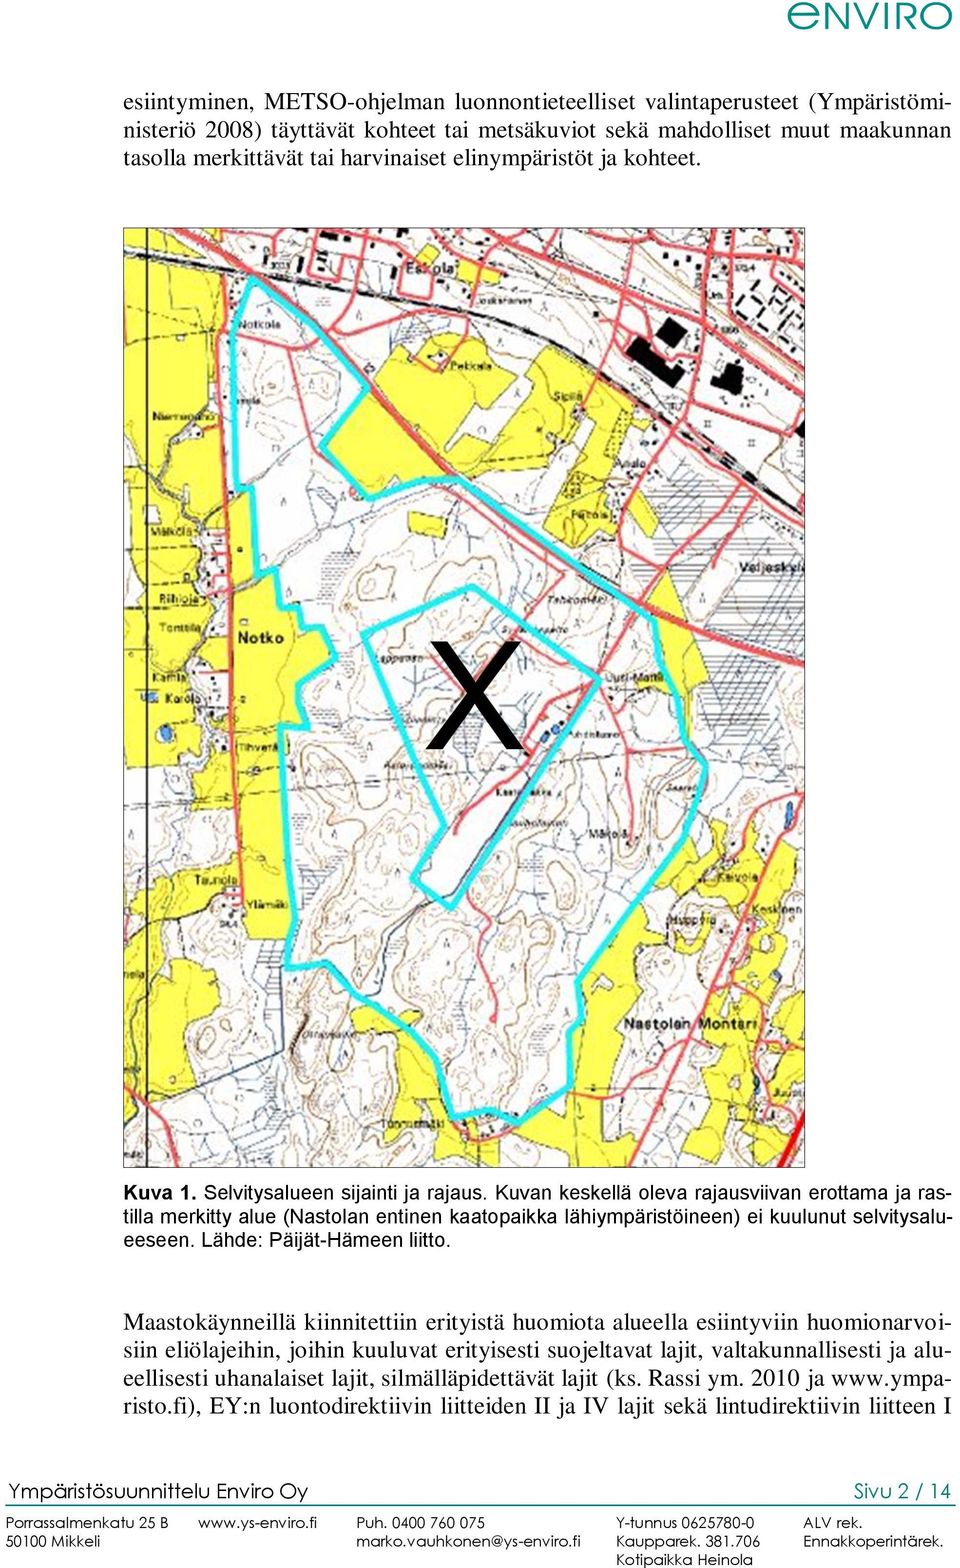 Kuvan keskellä oleva rajausviivan erottama ja rastilla merkitty alue (Nastolan entinen kaatopaikka lähiympäristöineen) ei kuulunut selvitysalueeseen. Lähde: Päijät-Hämeen liitto.